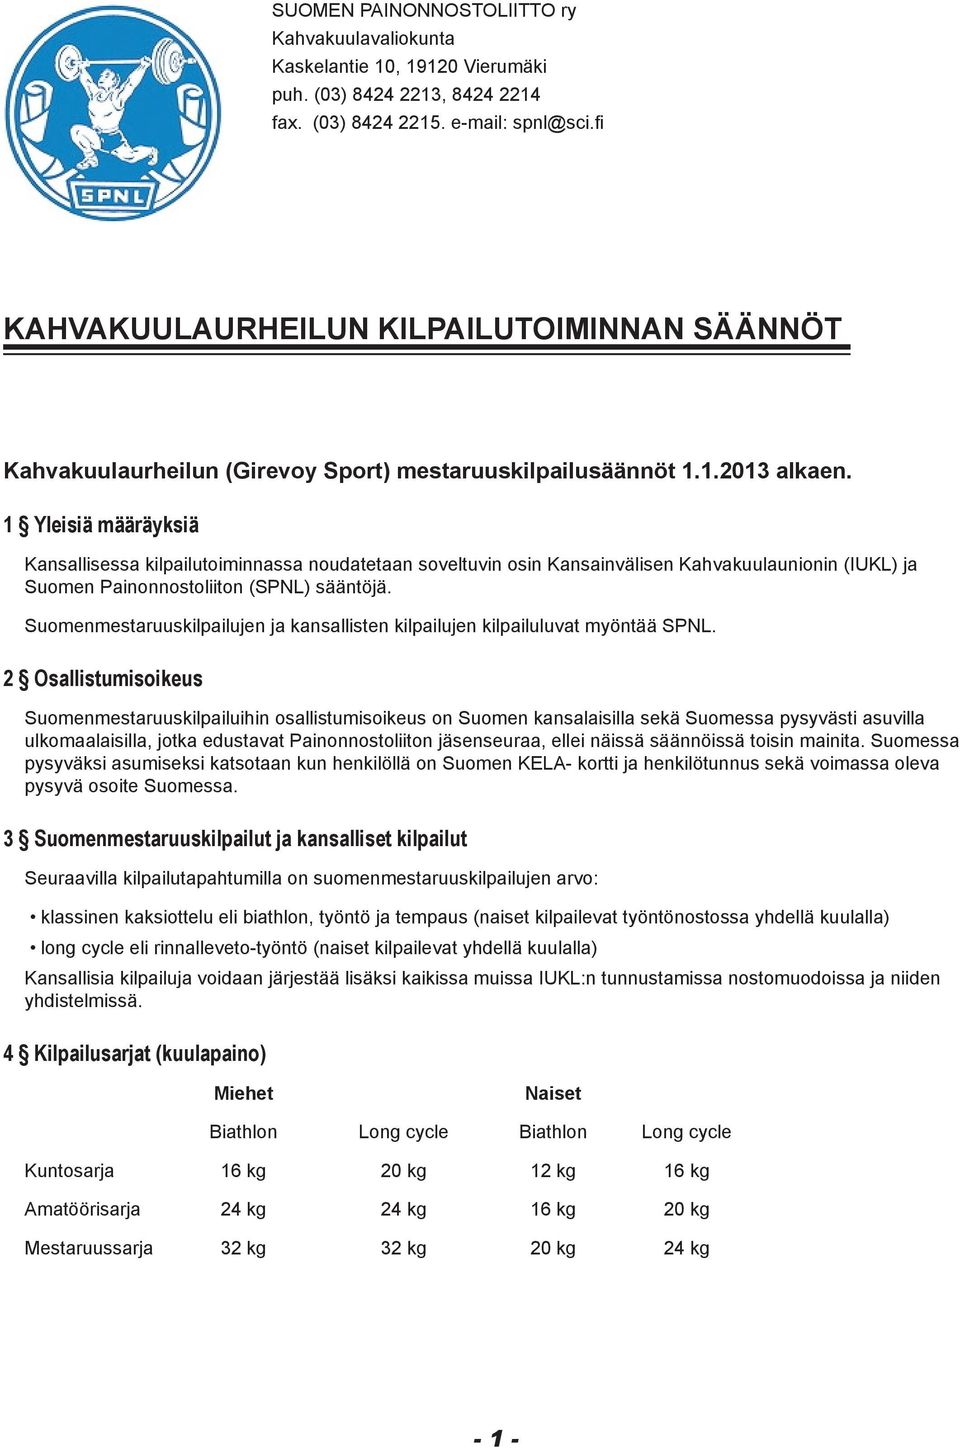 1 Yleisiä määräyksiä Kansallisessa kilpailutoiminnassa noudatetaan soveltuvin osin Kansainvälisen Kahvakuulaunionin (IUKL) ja Suomen Painonnostoliiton (SPNL) sääntöjä.